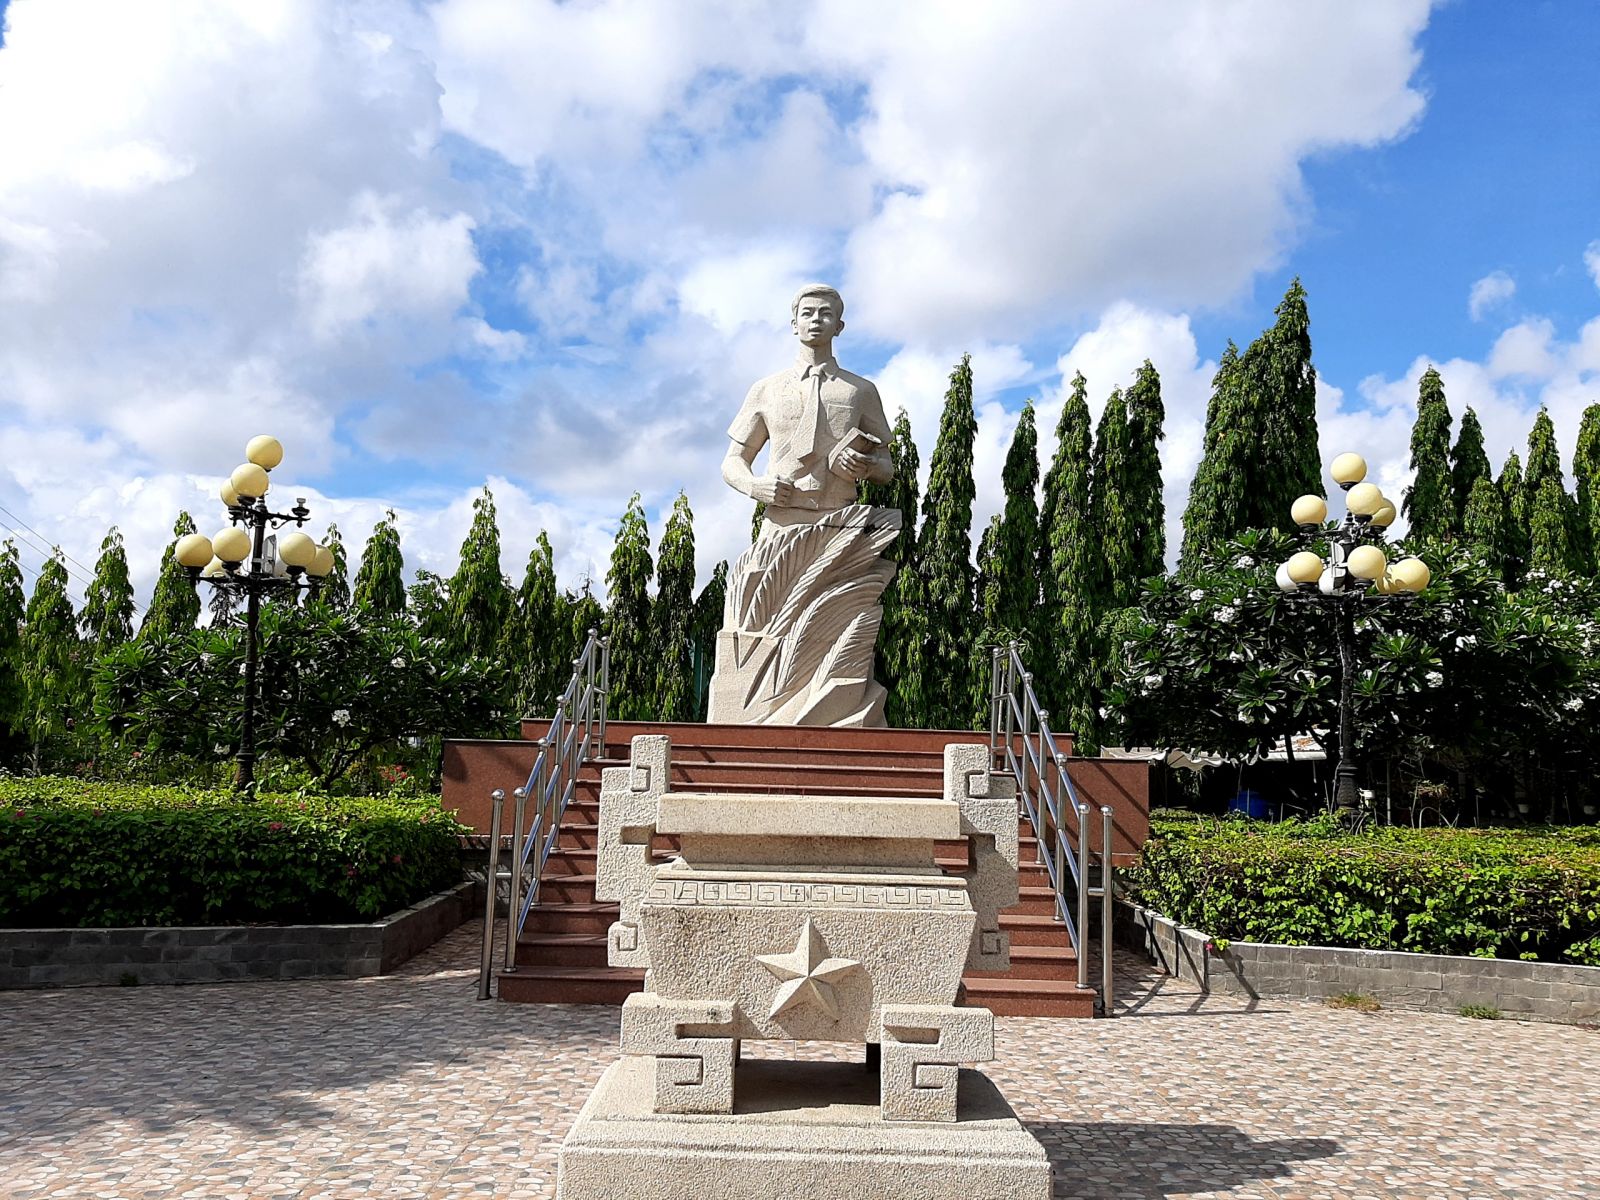 Công viên Nguyễn Thái Bình với bức tượng người anh hùng là lời nhắc nhở chân thực nhất về người thanh niên yêu nước, anh hùng, bất khuất - một tấm gương sáng cho thế hệ thanh niên ngày nay